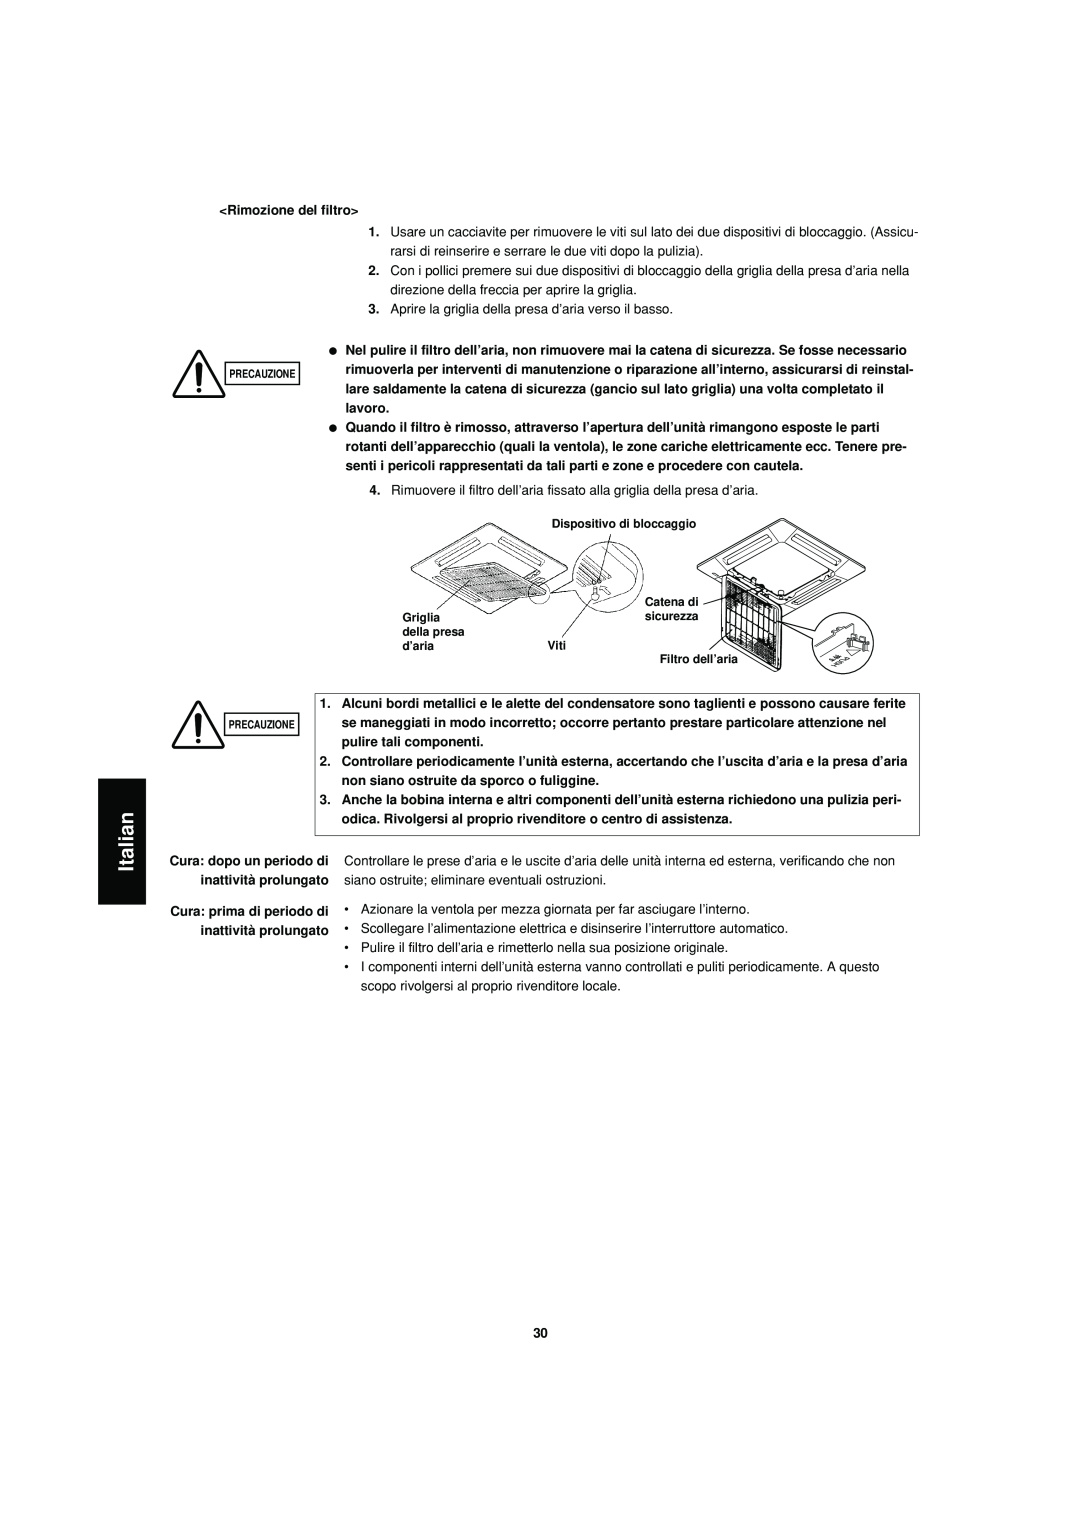 Sanyo SPW-XR254EH56 operation manual Italian, Rimozione del filtro 